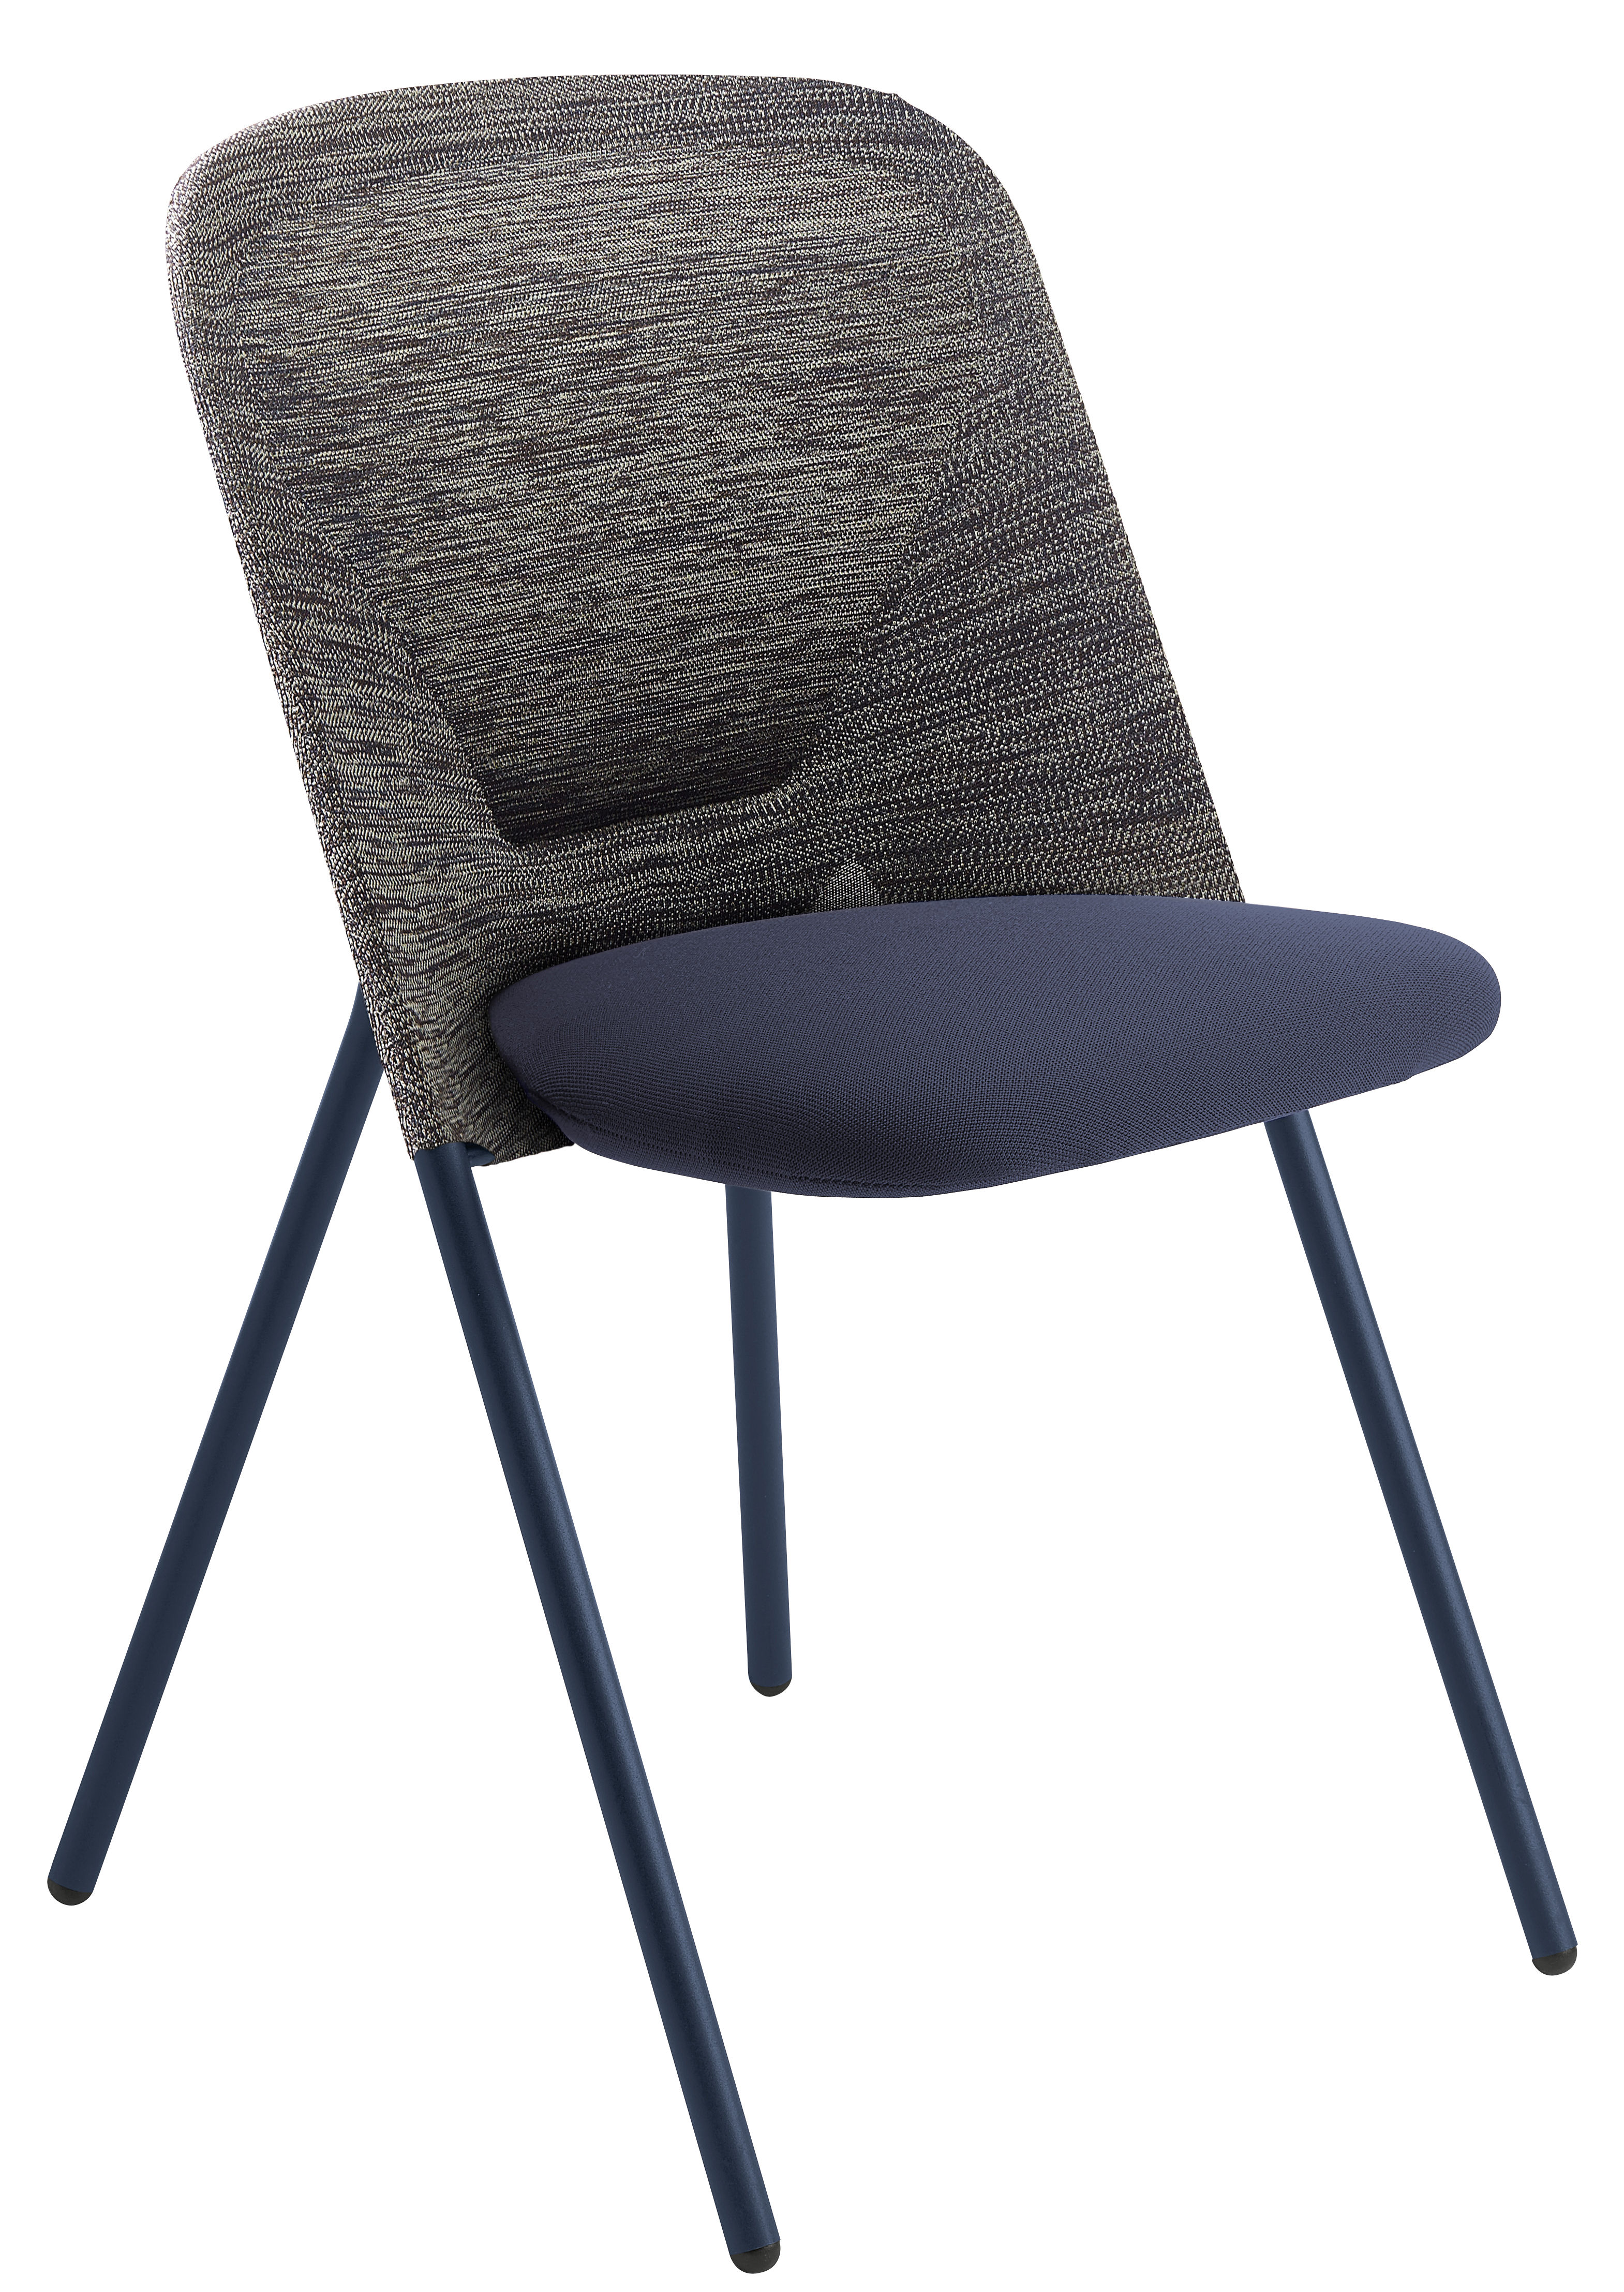 Chaise pliante Shift / Rembourrée - Tissu - Moooi bleu/gris en tissu